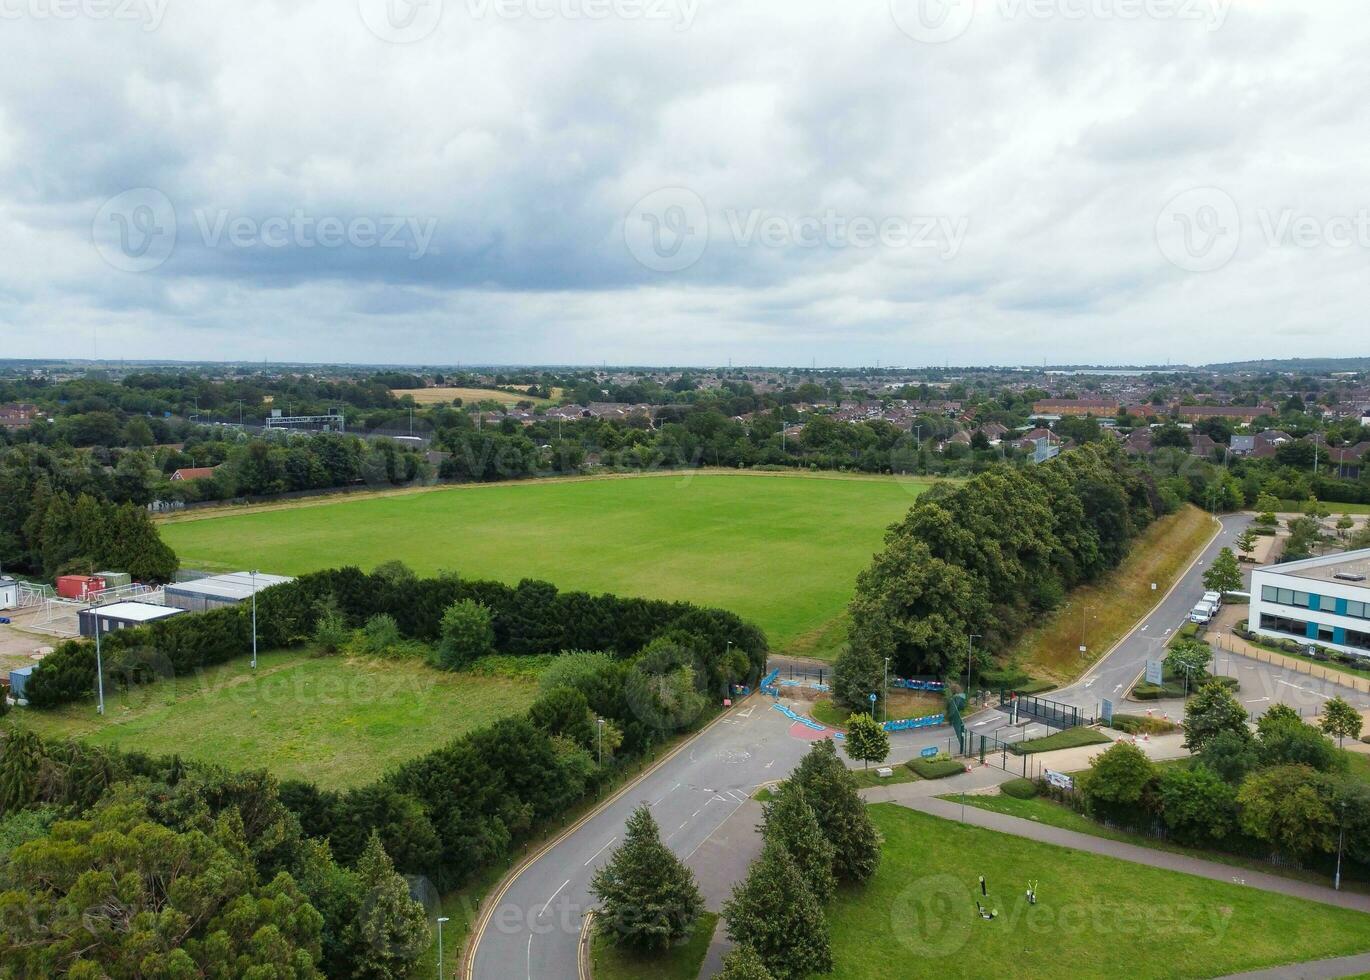 alto ángulo ver de occidental lutón ciudad y residencial distrito. aéreo ver de capturado con drones cámara en 30 julio, 2023. Inglaterra, Reino Unido foto